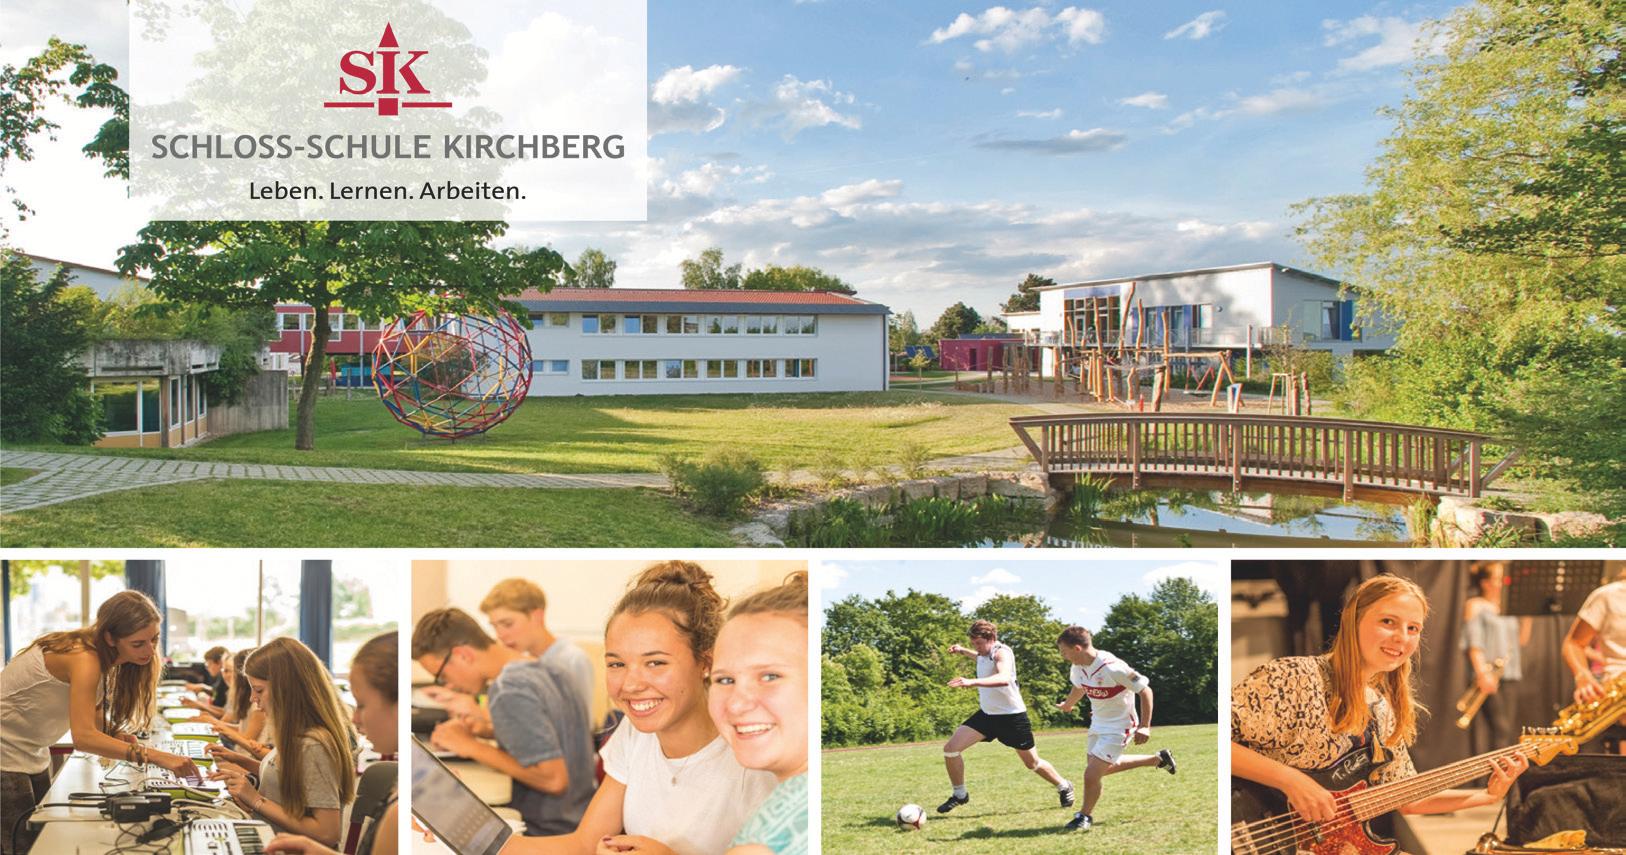 Schloss-Schule Kirchberg